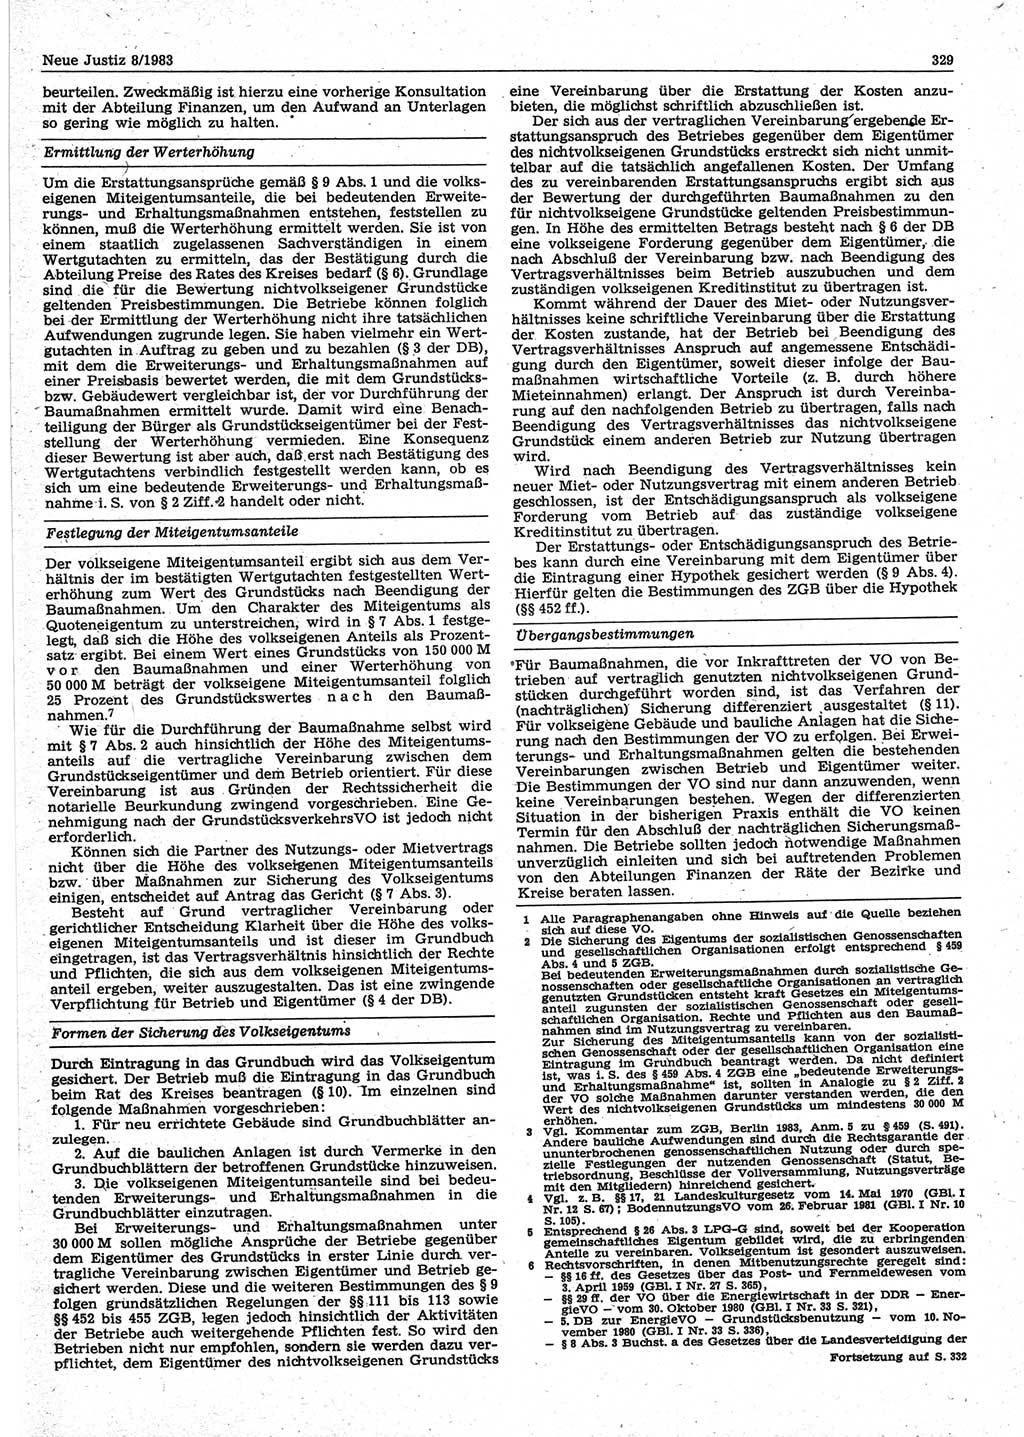 Neue Justiz (NJ), Zeitschrift für sozialistisches Recht und Gesetzlichkeit [Deutsche Demokratische Republik (DDR)], 37. Jahrgang 1983, Seite 329 (NJ DDR 1983, S. 329)